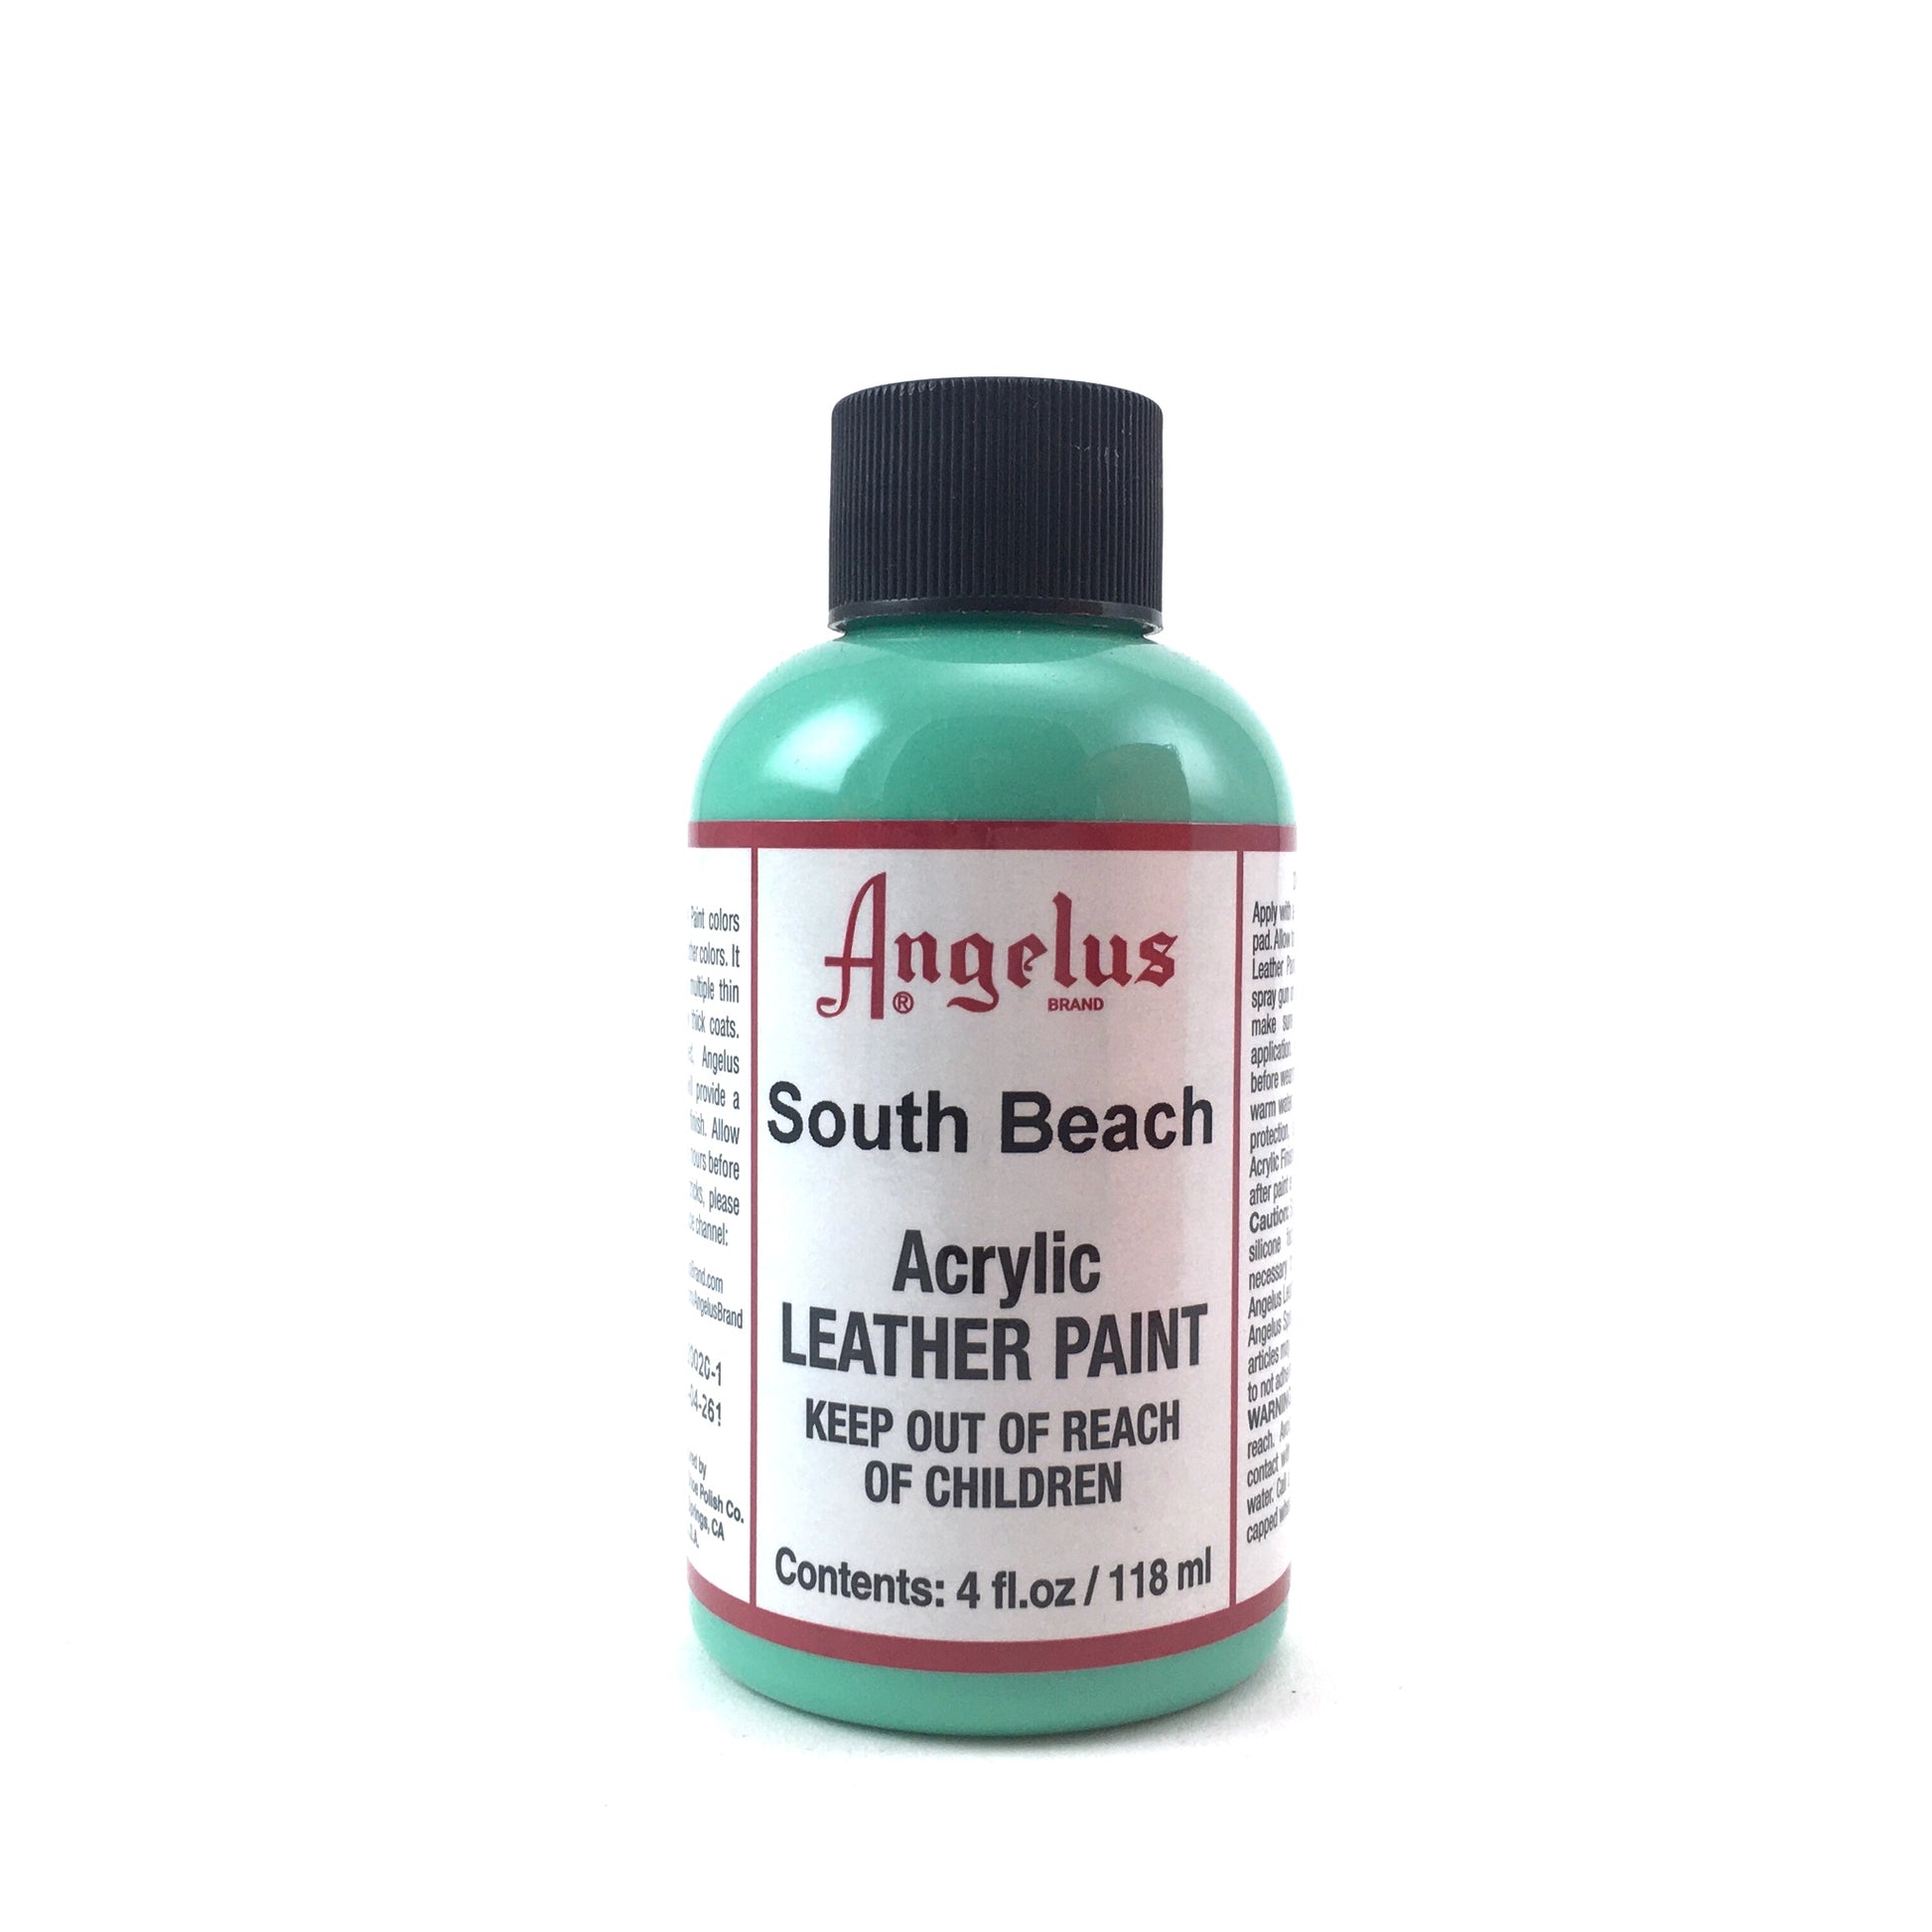 Angelus Acrylic Leather Paint - 4oz - Turquoise